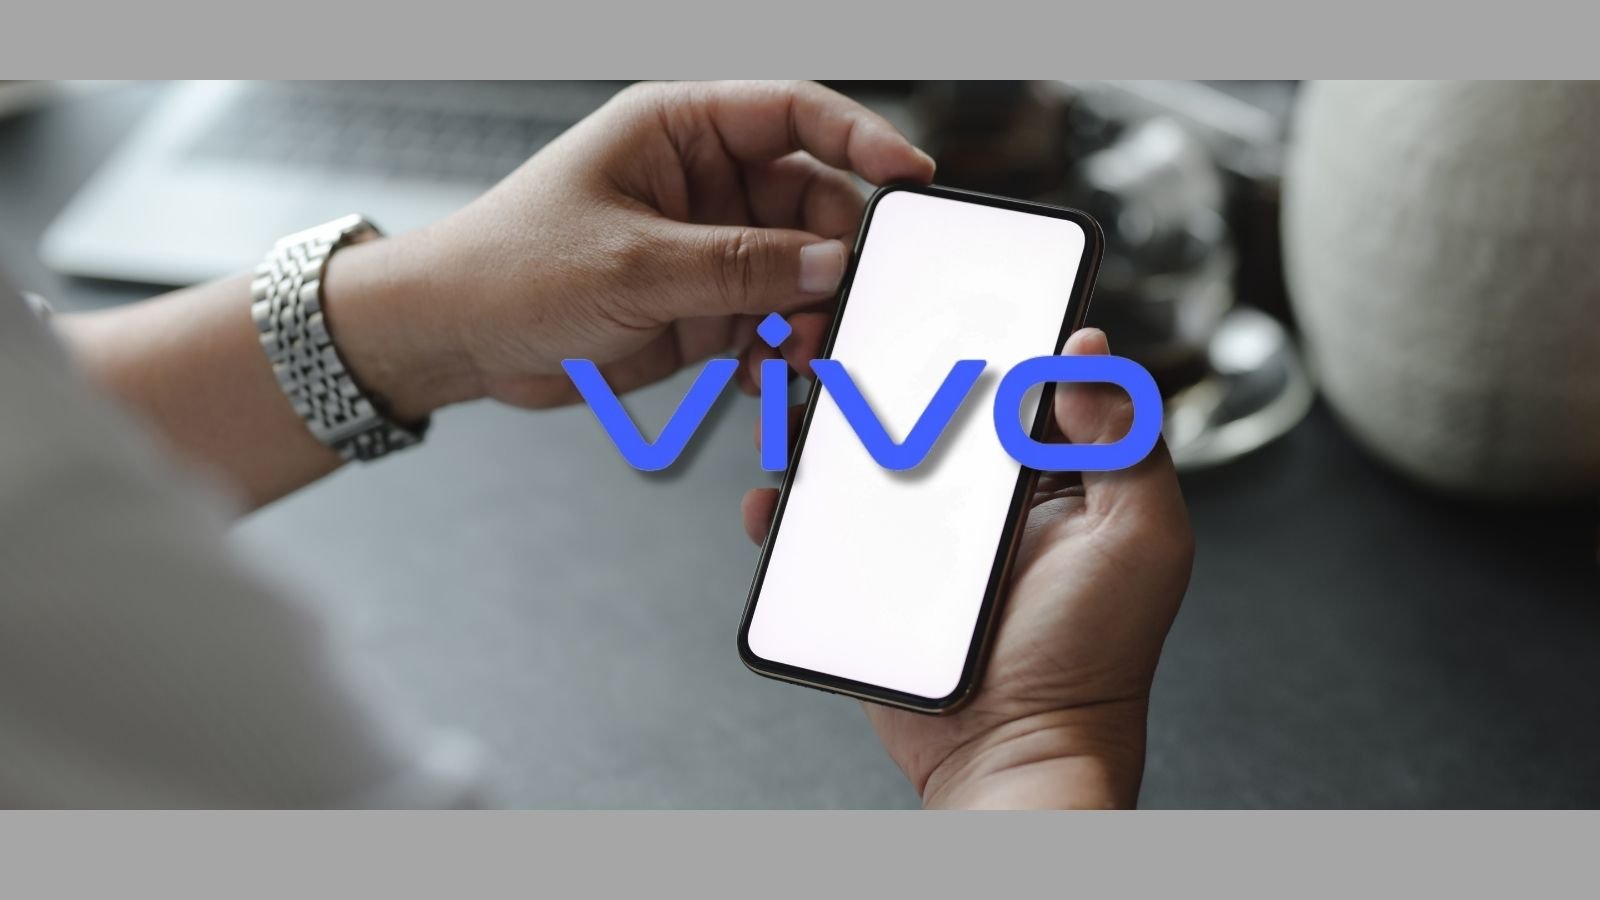 V30 serisi için telefonlarını geliştirmek adına çalışmalara devam ediyor. Şimdi ise Vivo V30 5G modelli telefon tanıtımlı görseli ortaya çıktı. 